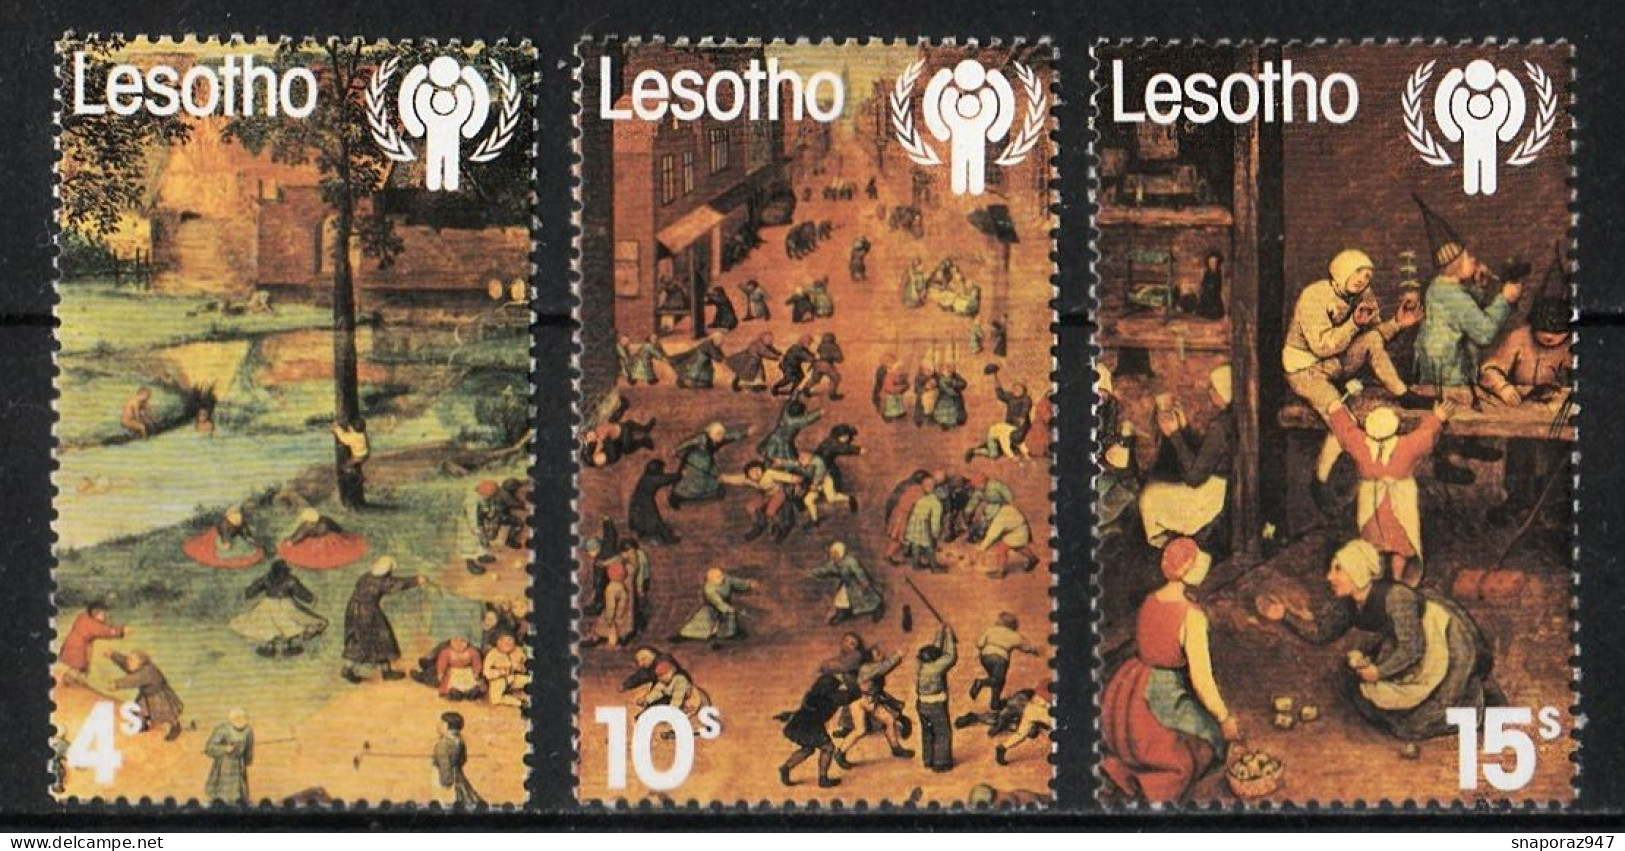 1979 Lesotho International Year Of The Child Set MNH** B587 - UNICEF